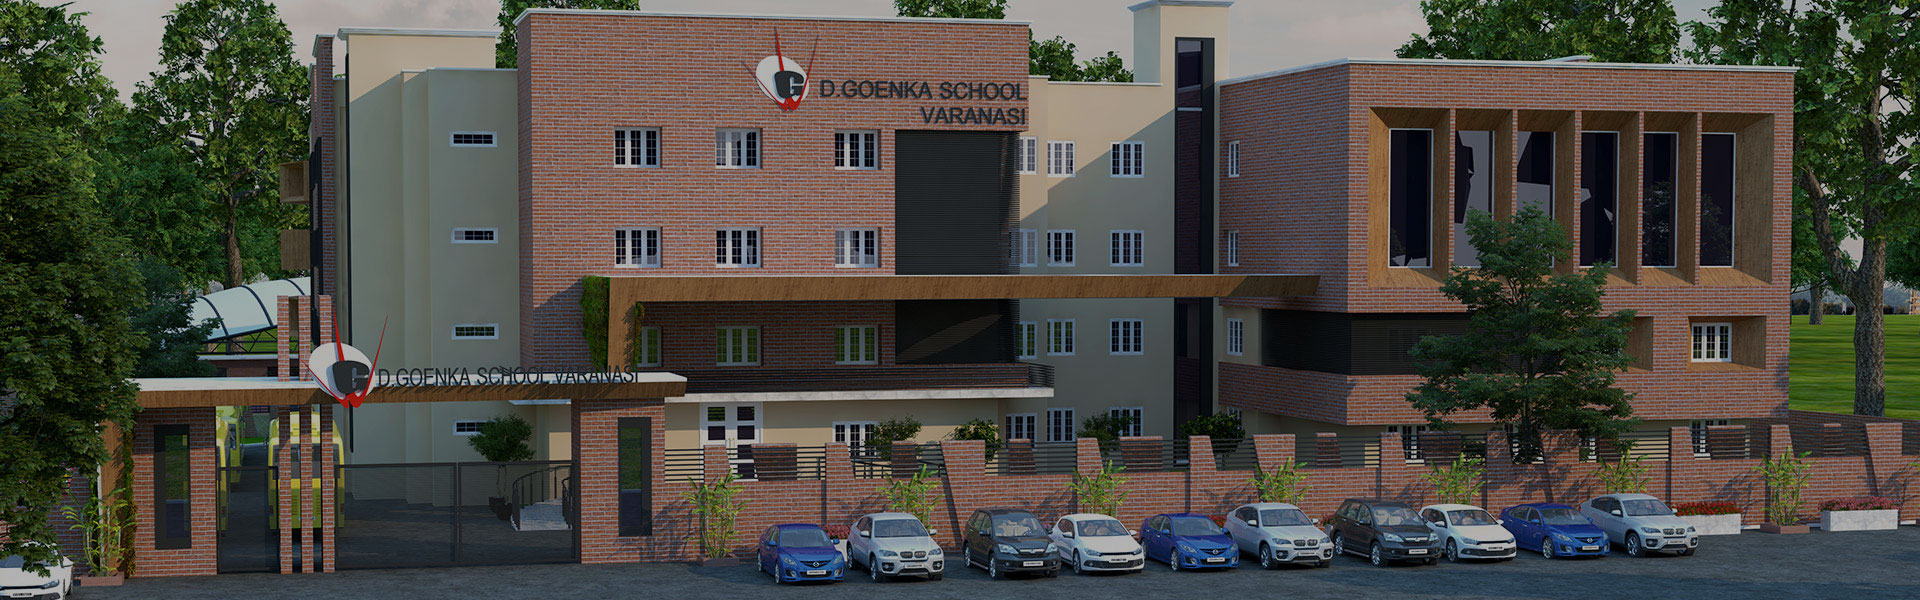 Gd Goenka School Varanasi